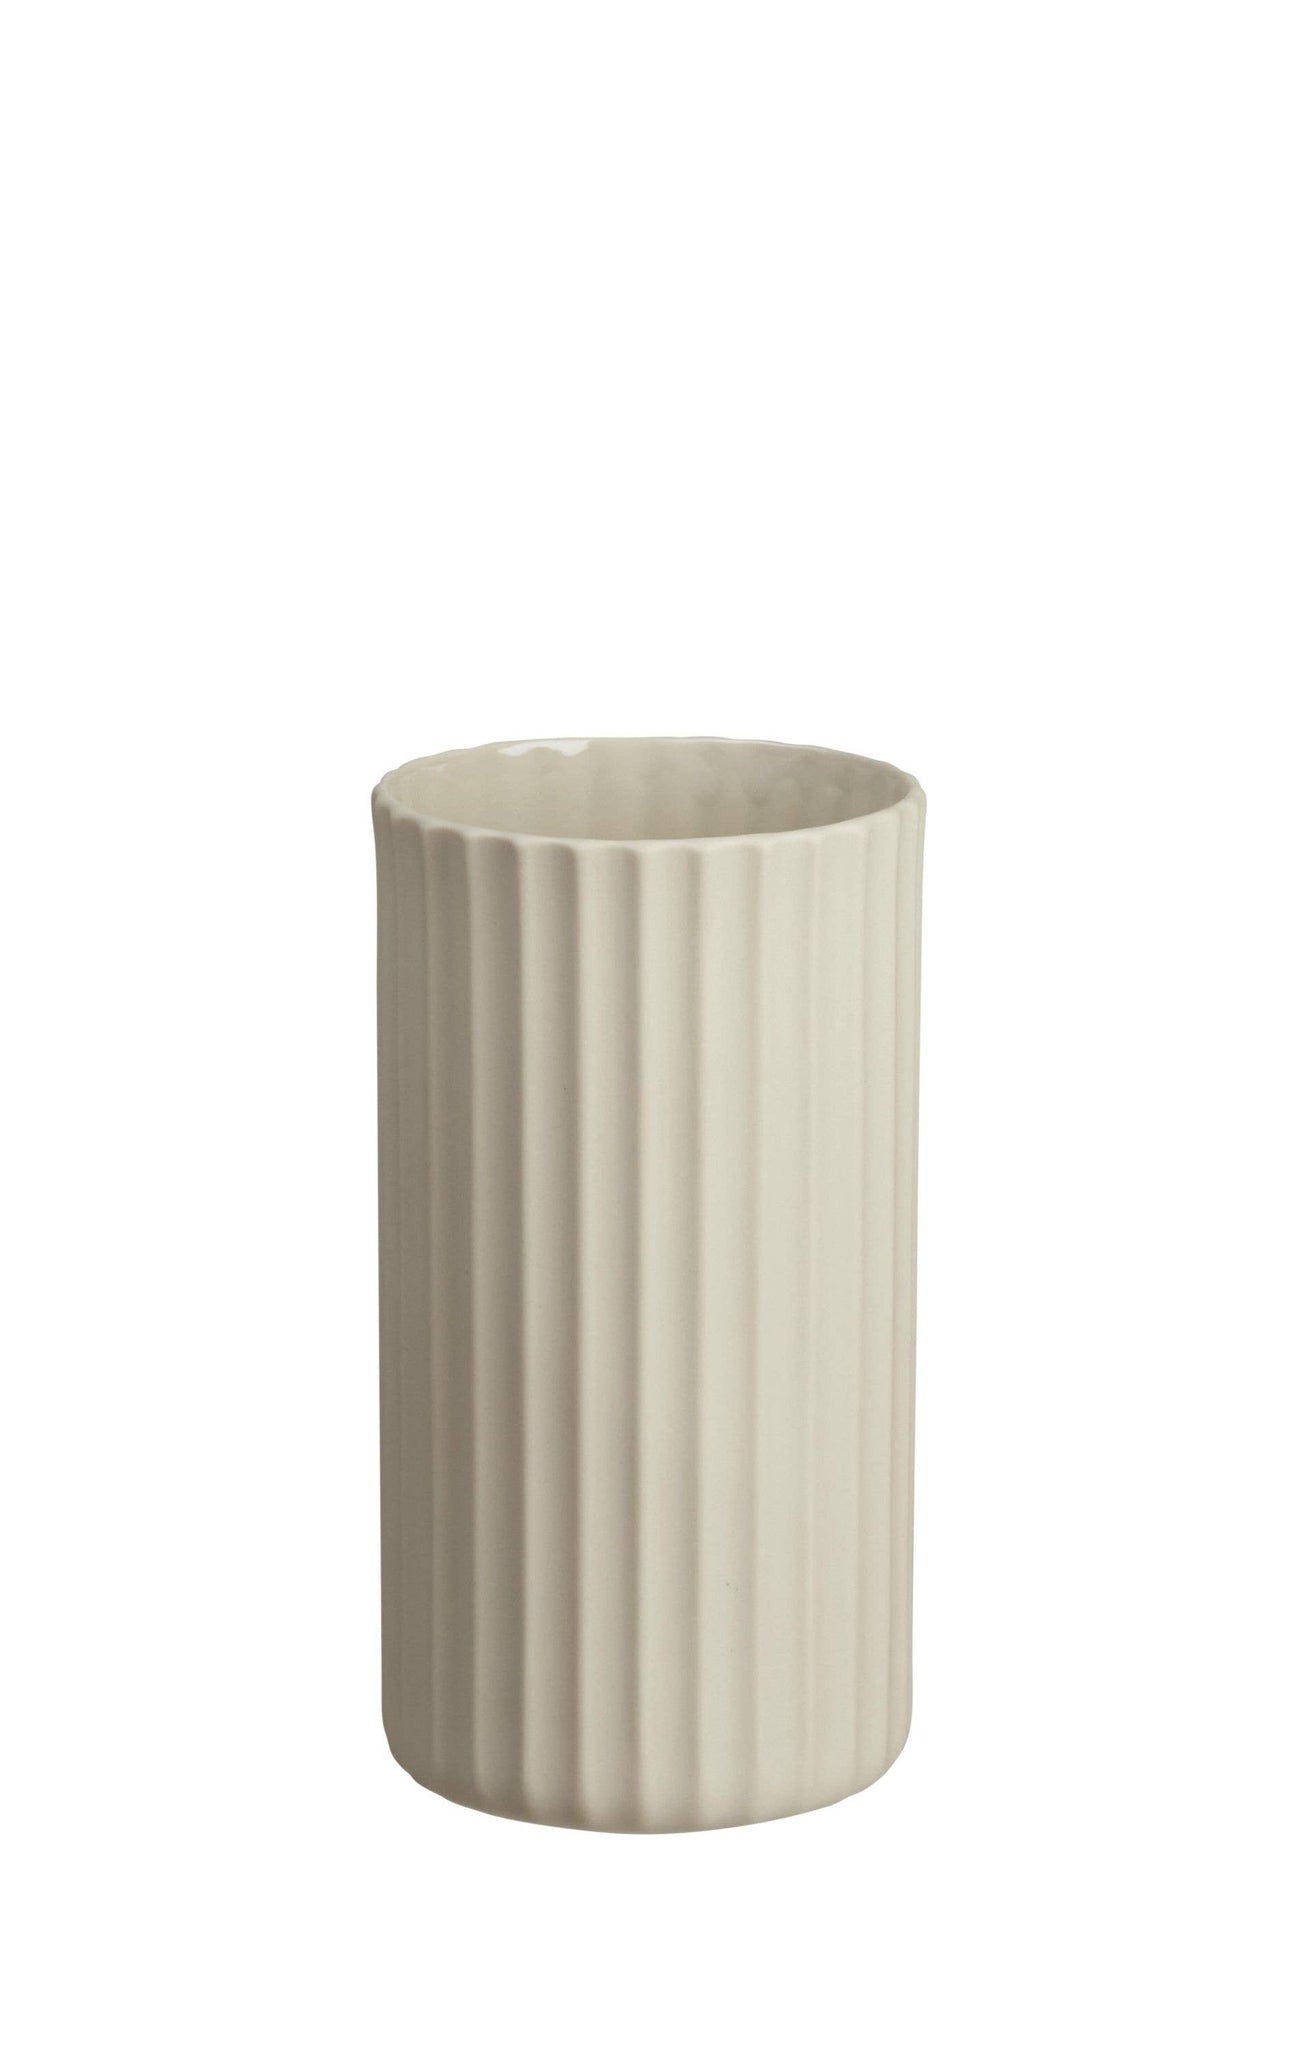 Yoko Vases Cylindrical